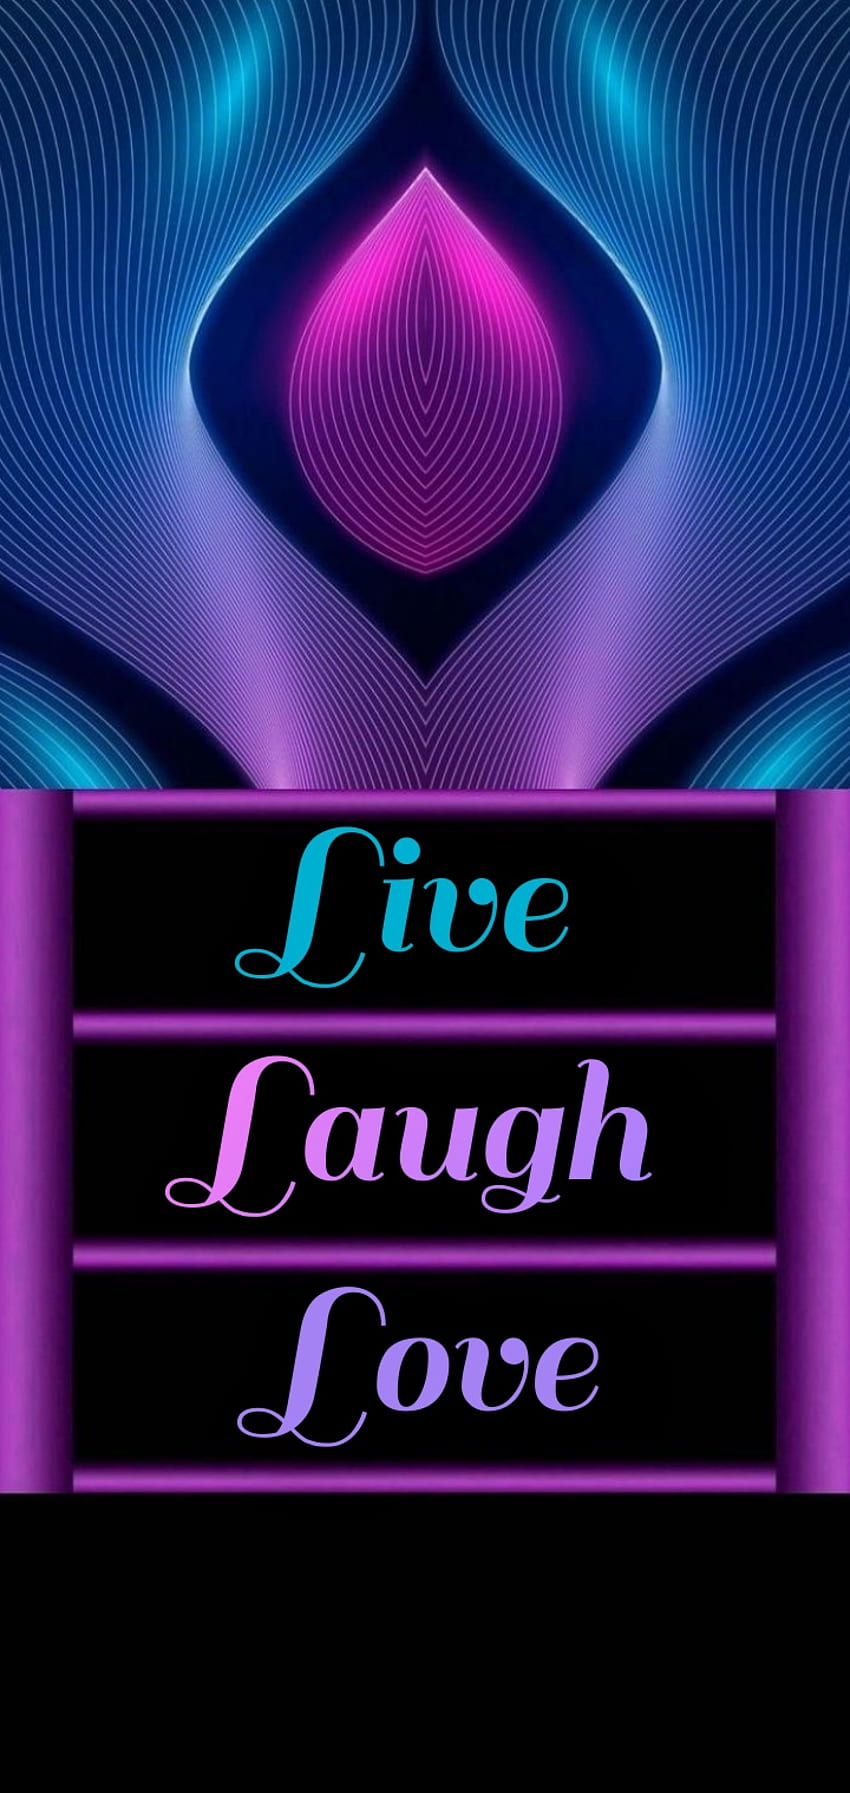 150 Live Laugh Love ideas in 2023  live laugh love laugh live laugh love  quotes